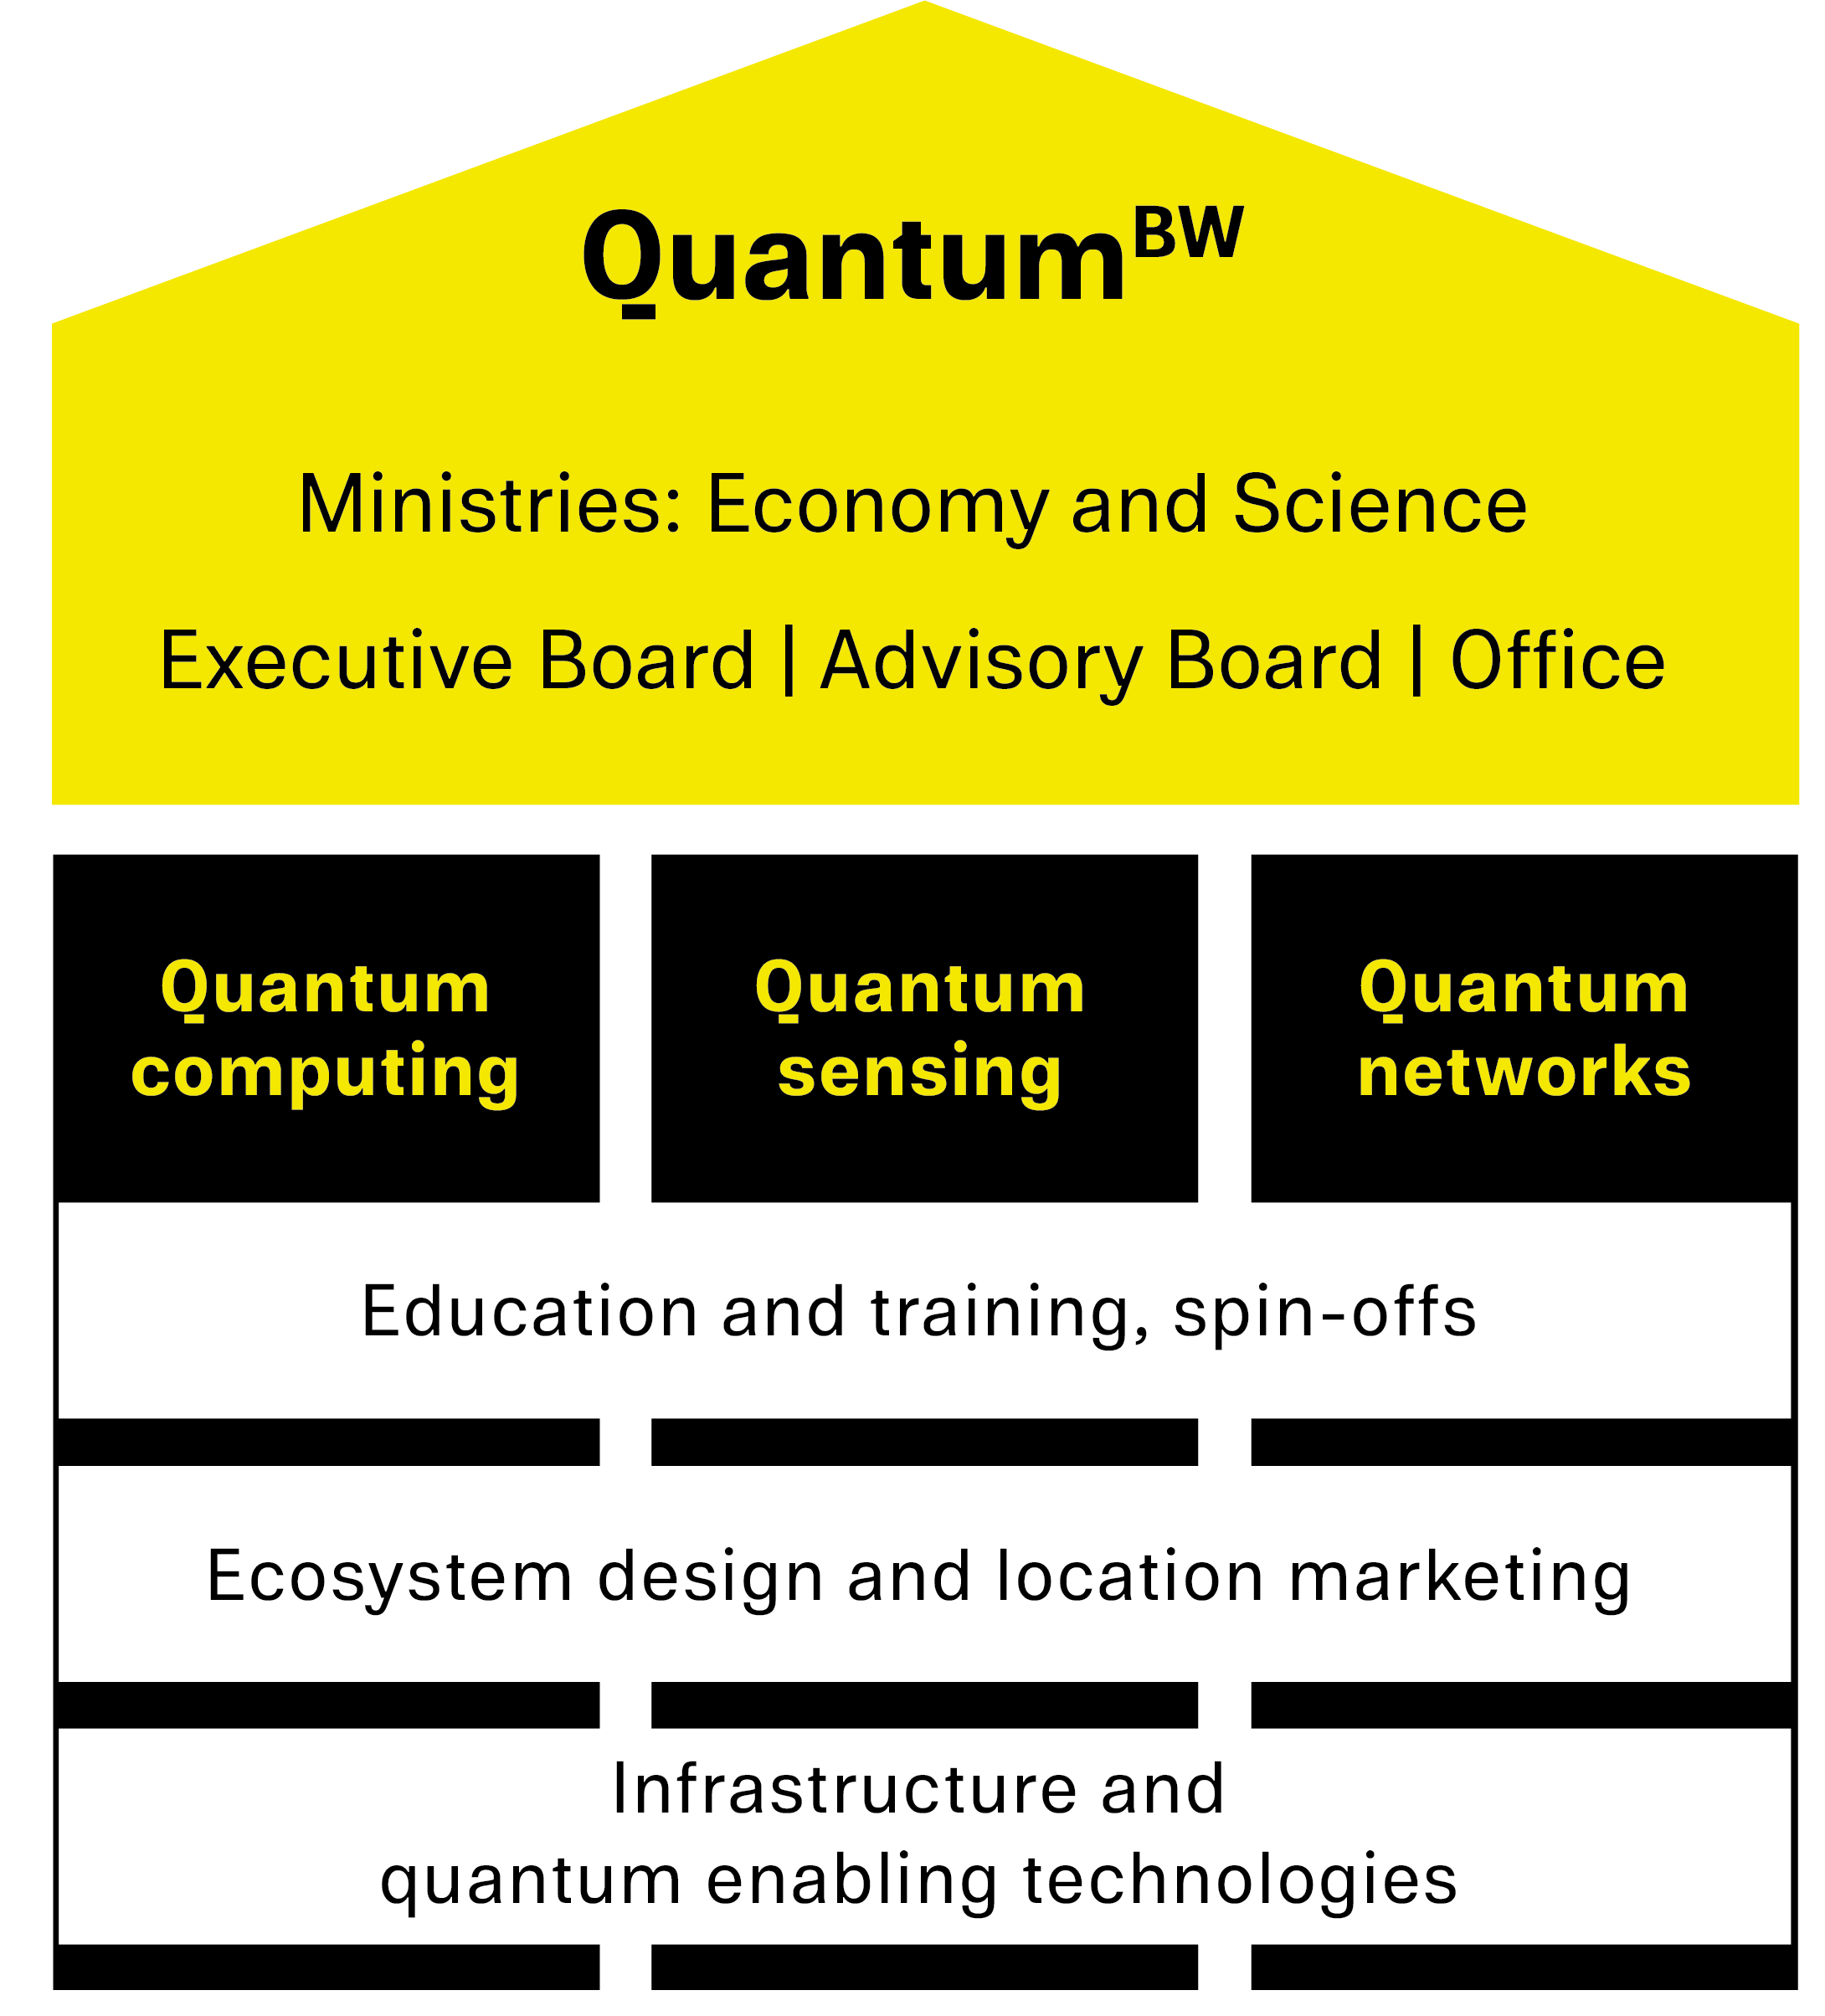 QuantumBW governance diagram